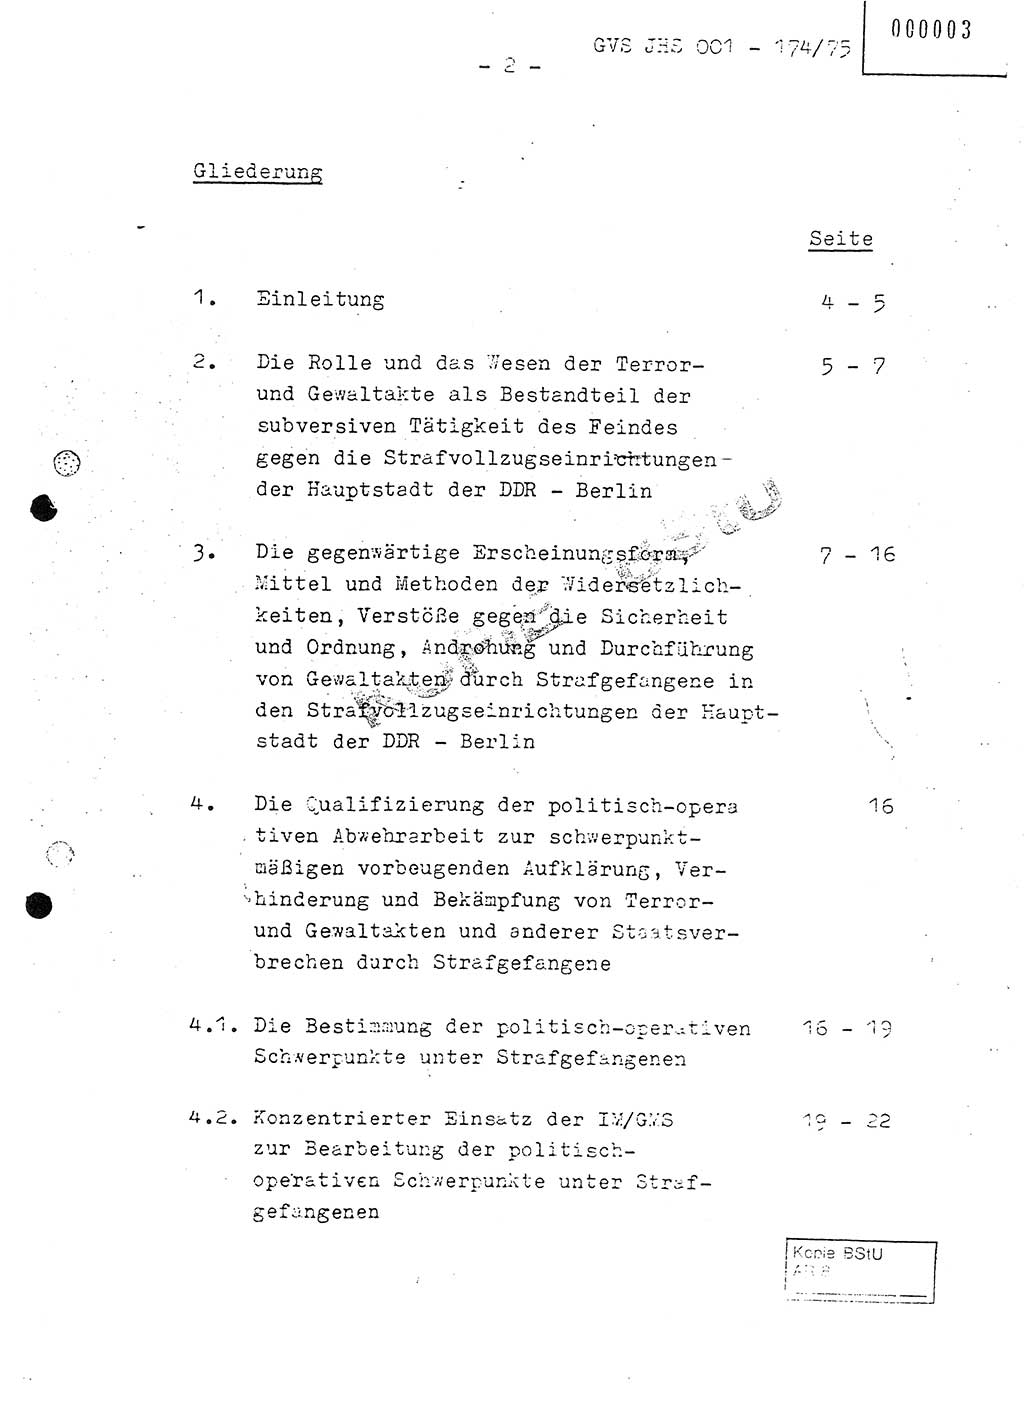 Fachschulabschlußarbeit Oberleutnant Adolf Cichon (Abt. Ⅶ), Ministerium für Staatssicherheit (MfS) [Deutsche Demokratische Republik (DDR)], Juristische Hochschule (JHS), Geheime Verschlußsache (GVS) 001-174/75, Potsdam 1976, Seite 2 (FS-Abschl.-Arb. MfS DDR JHS GVS 001-174/75 1976, S. 2)